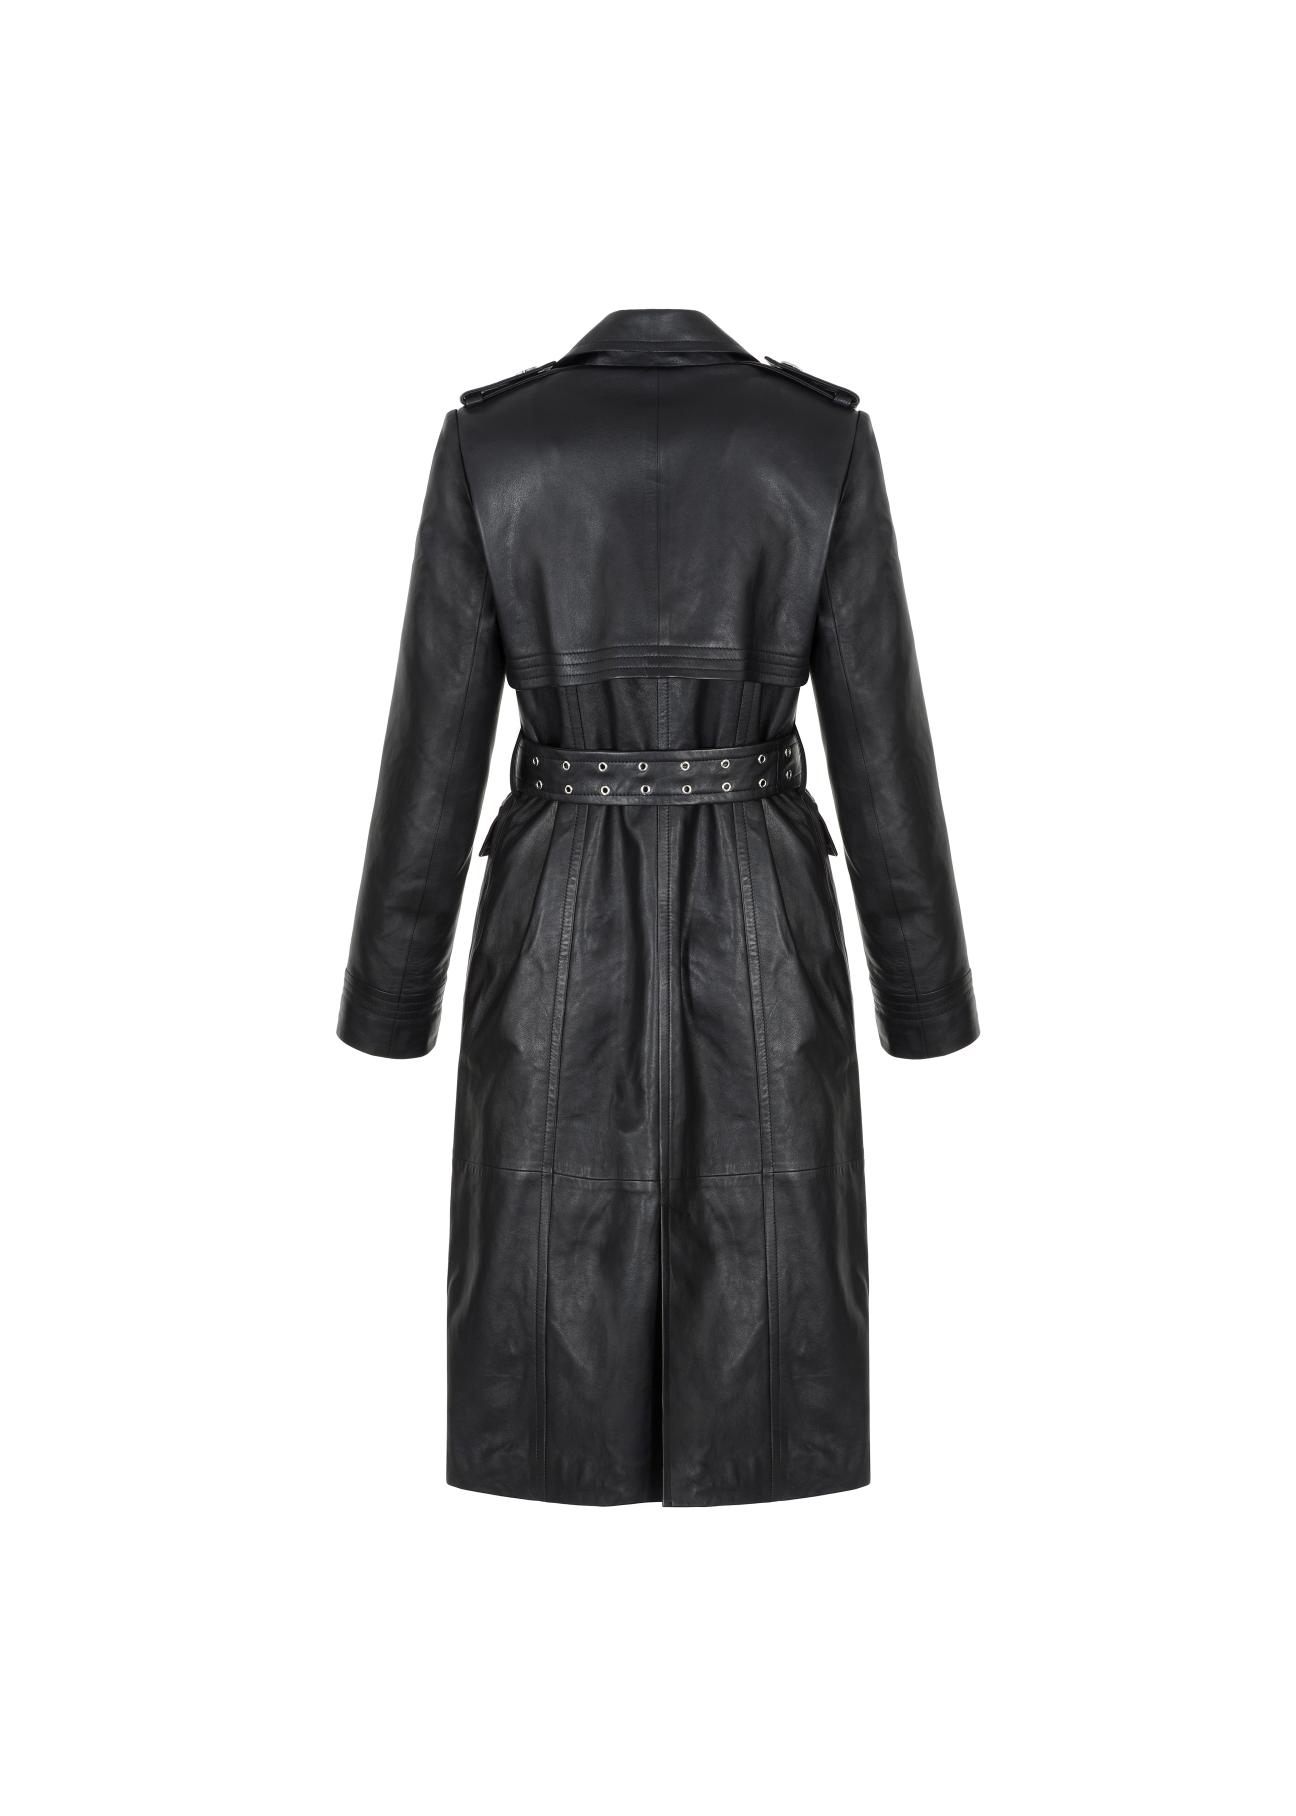 Dopasowany skórzany płaszcz damski KURDS-0331-1151(Z21)